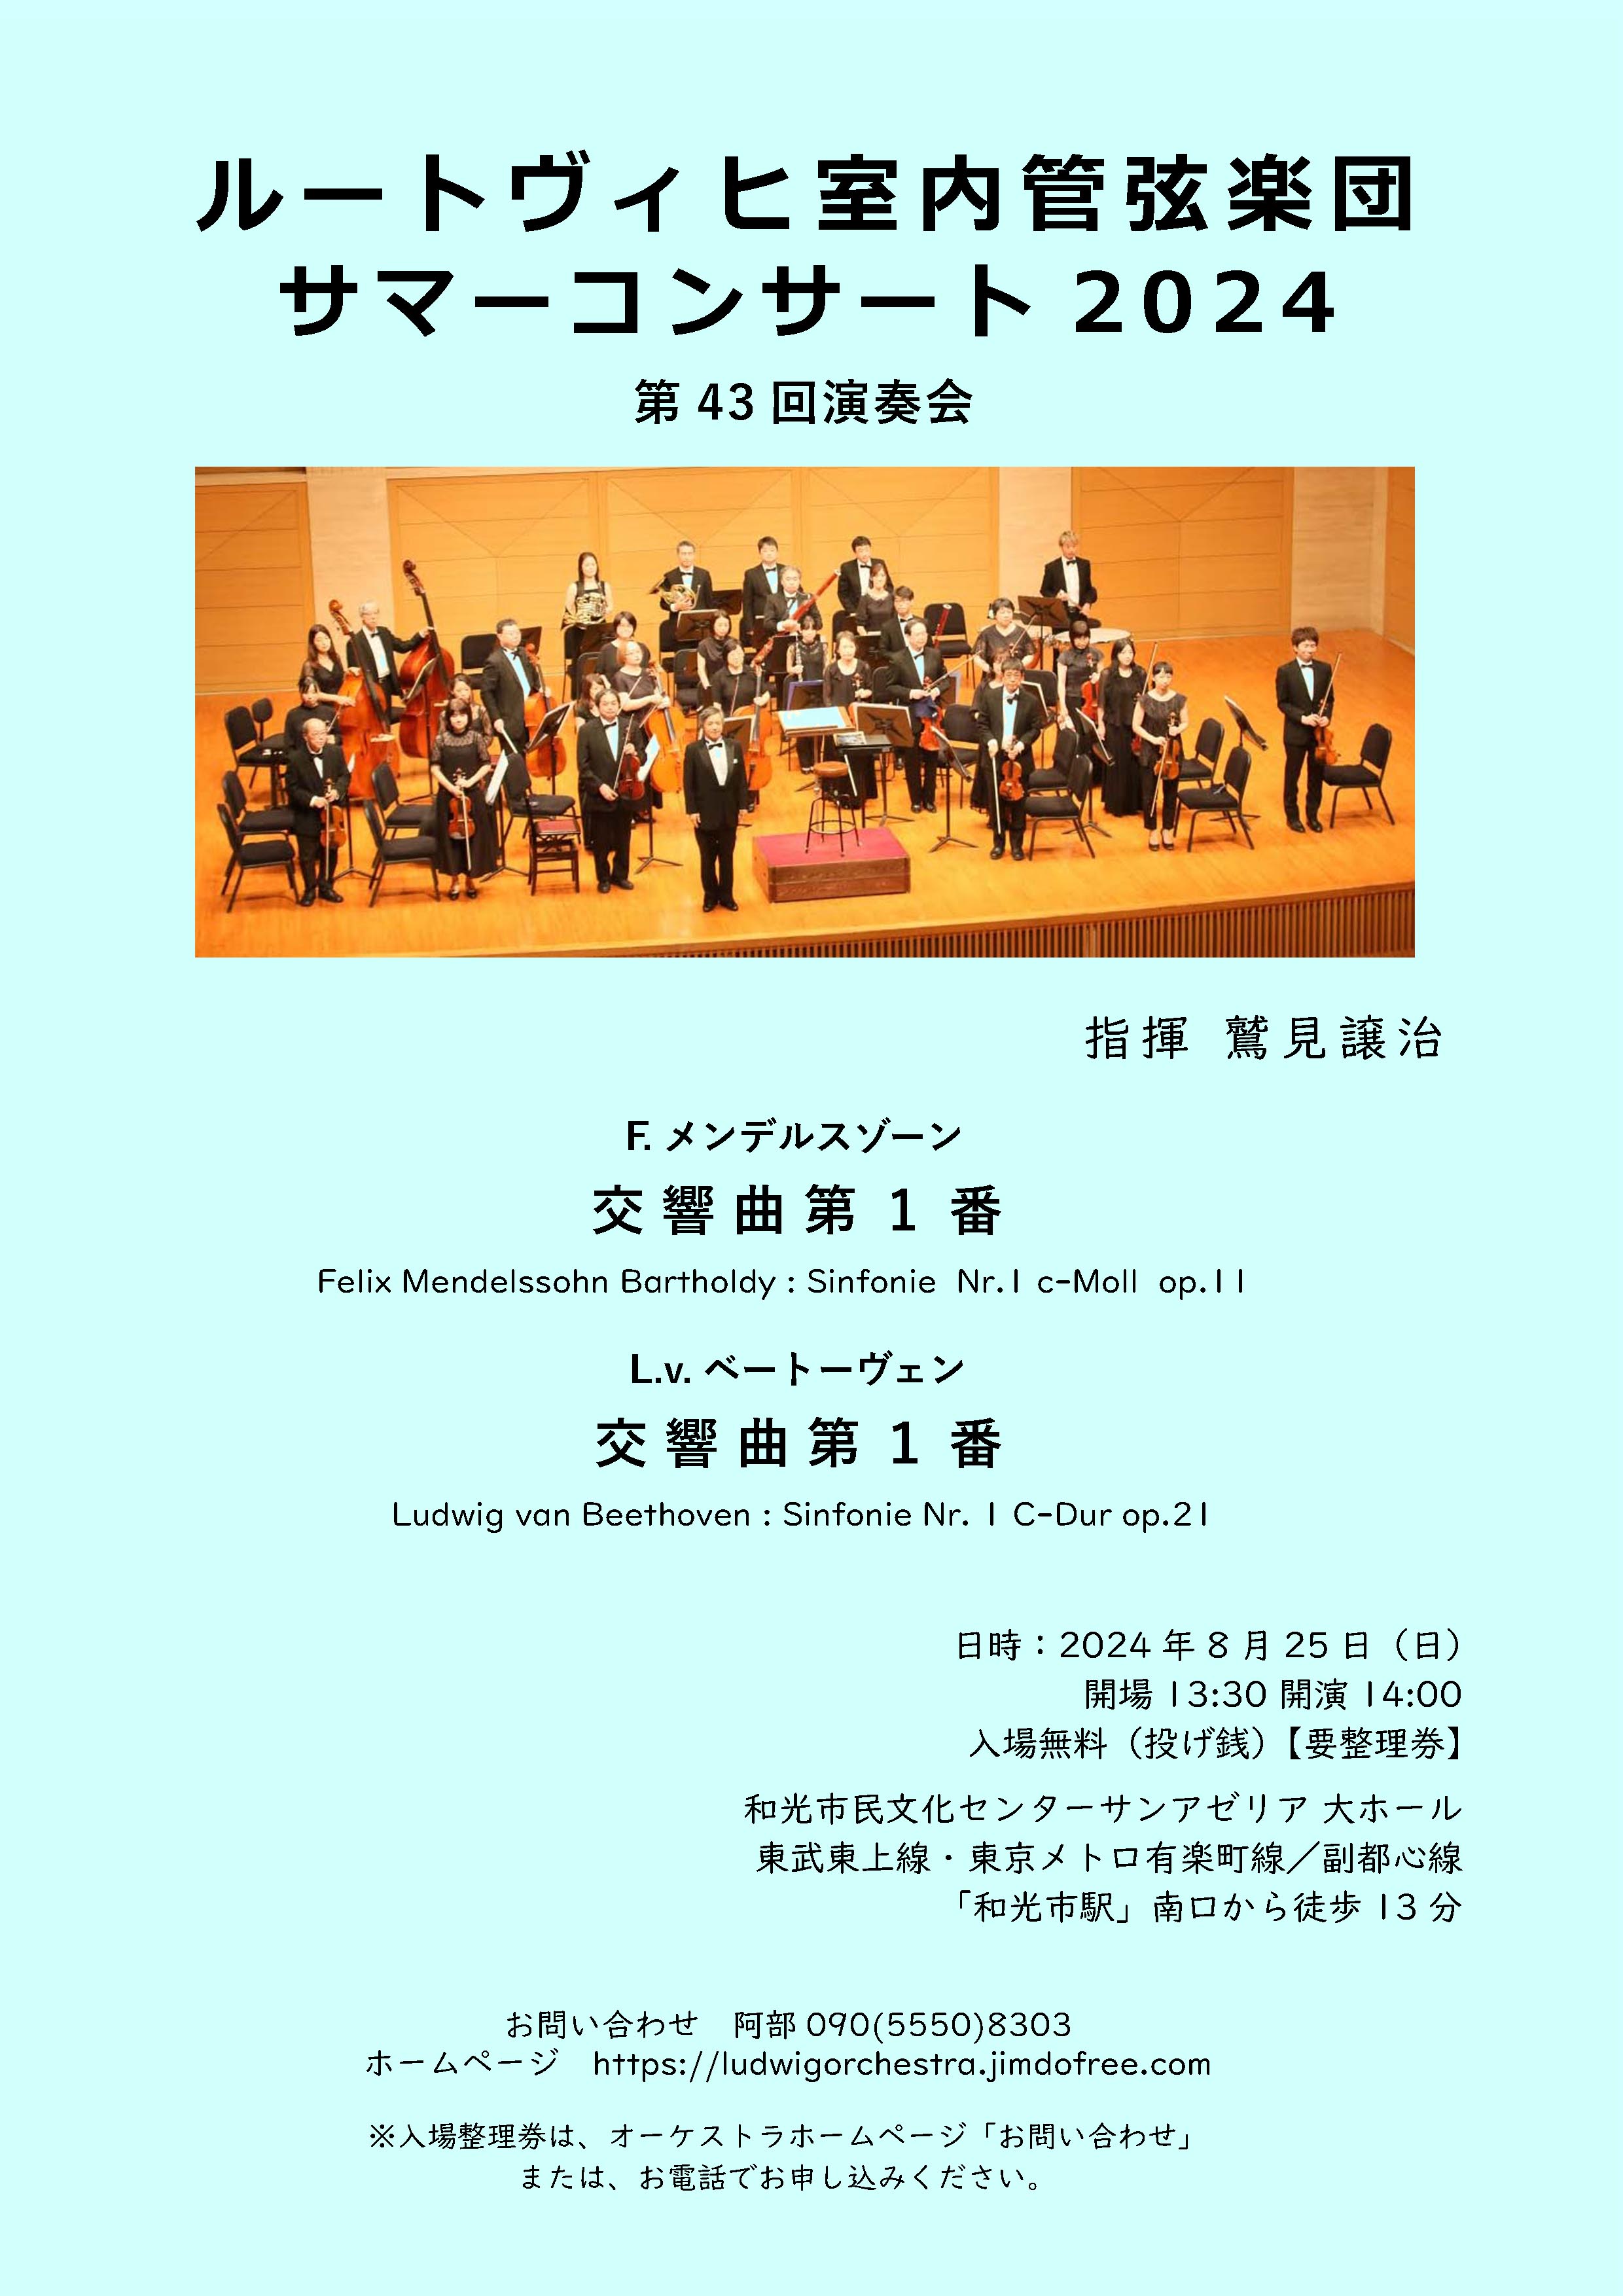 ルートヴィヒ室内管弦楽団ルートヴィヒ室内管弦楽団 サマーコンサート2024のフライヤー画像